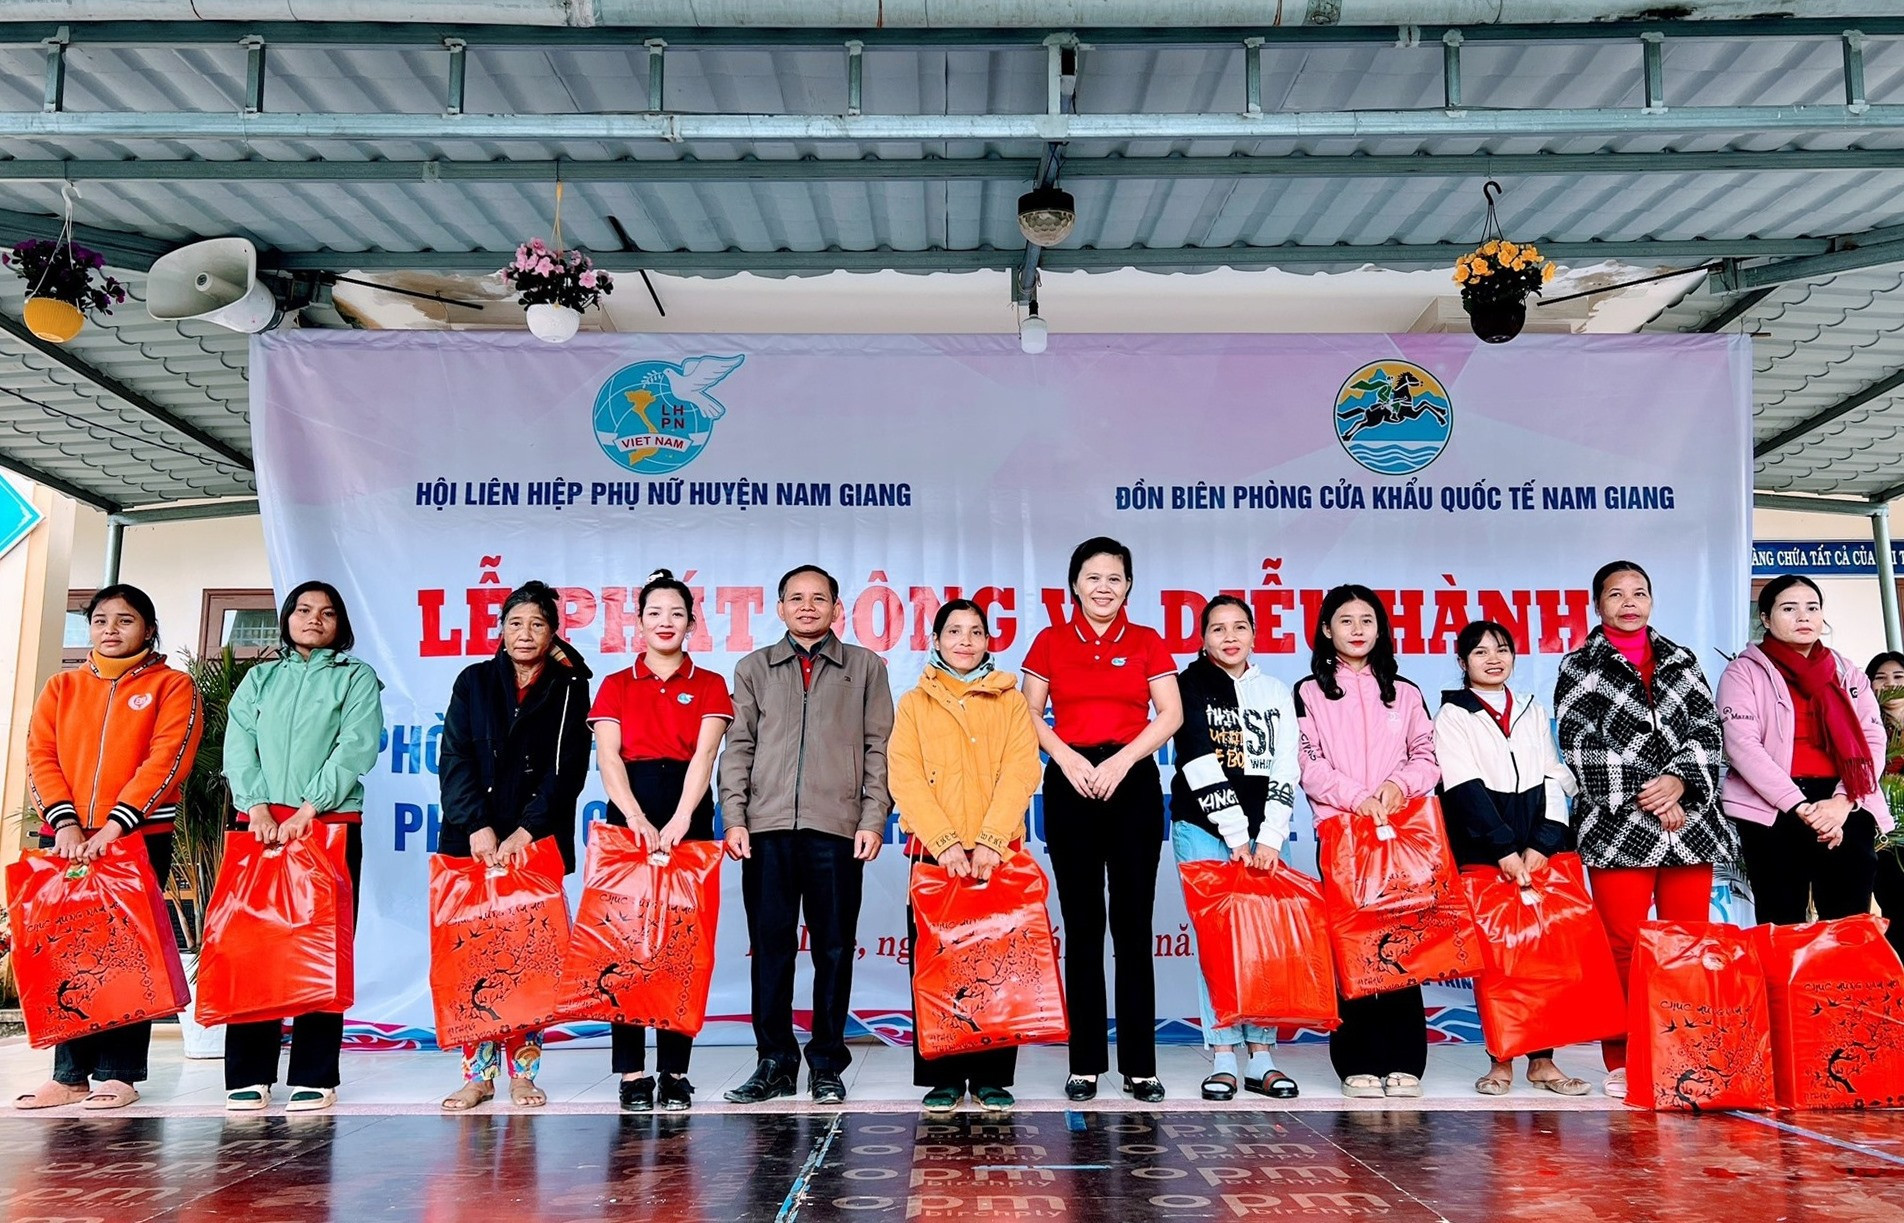 Hội LHPN huyện Nam Giang trao 10 suất quà cho học sinh nghèo vượt khó và 10 suất quà cho hội viên phụ nữ nghèo của xã La Dêê (mỗi suất trị giá 300 nghìn đồng).